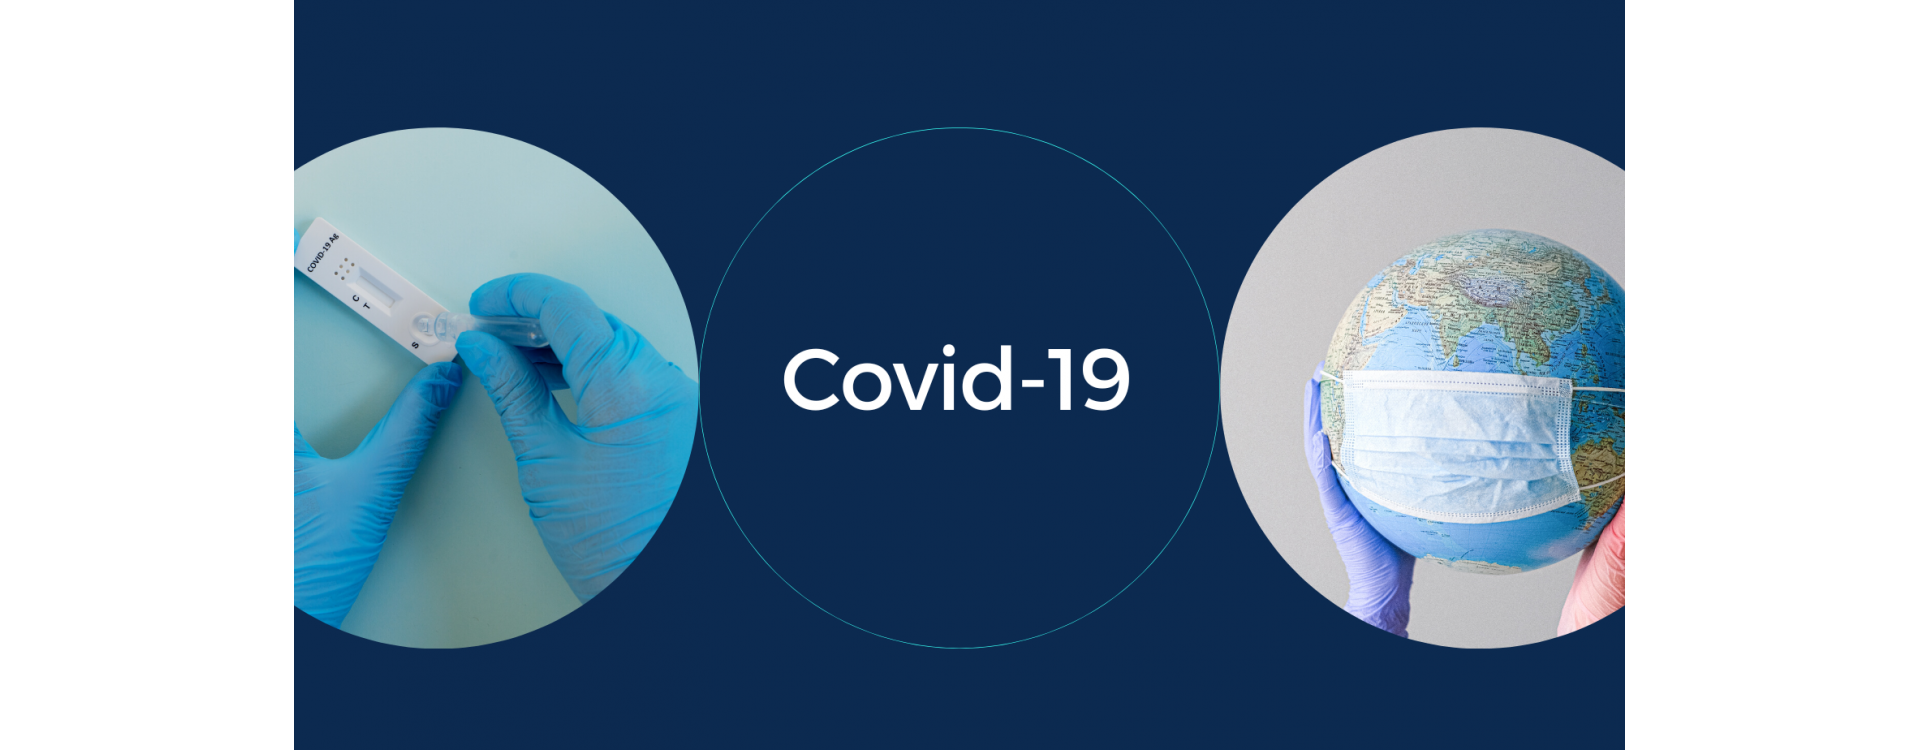 COVID-19: Malattia, prevenzione, test rapidi, mascherine, ecc